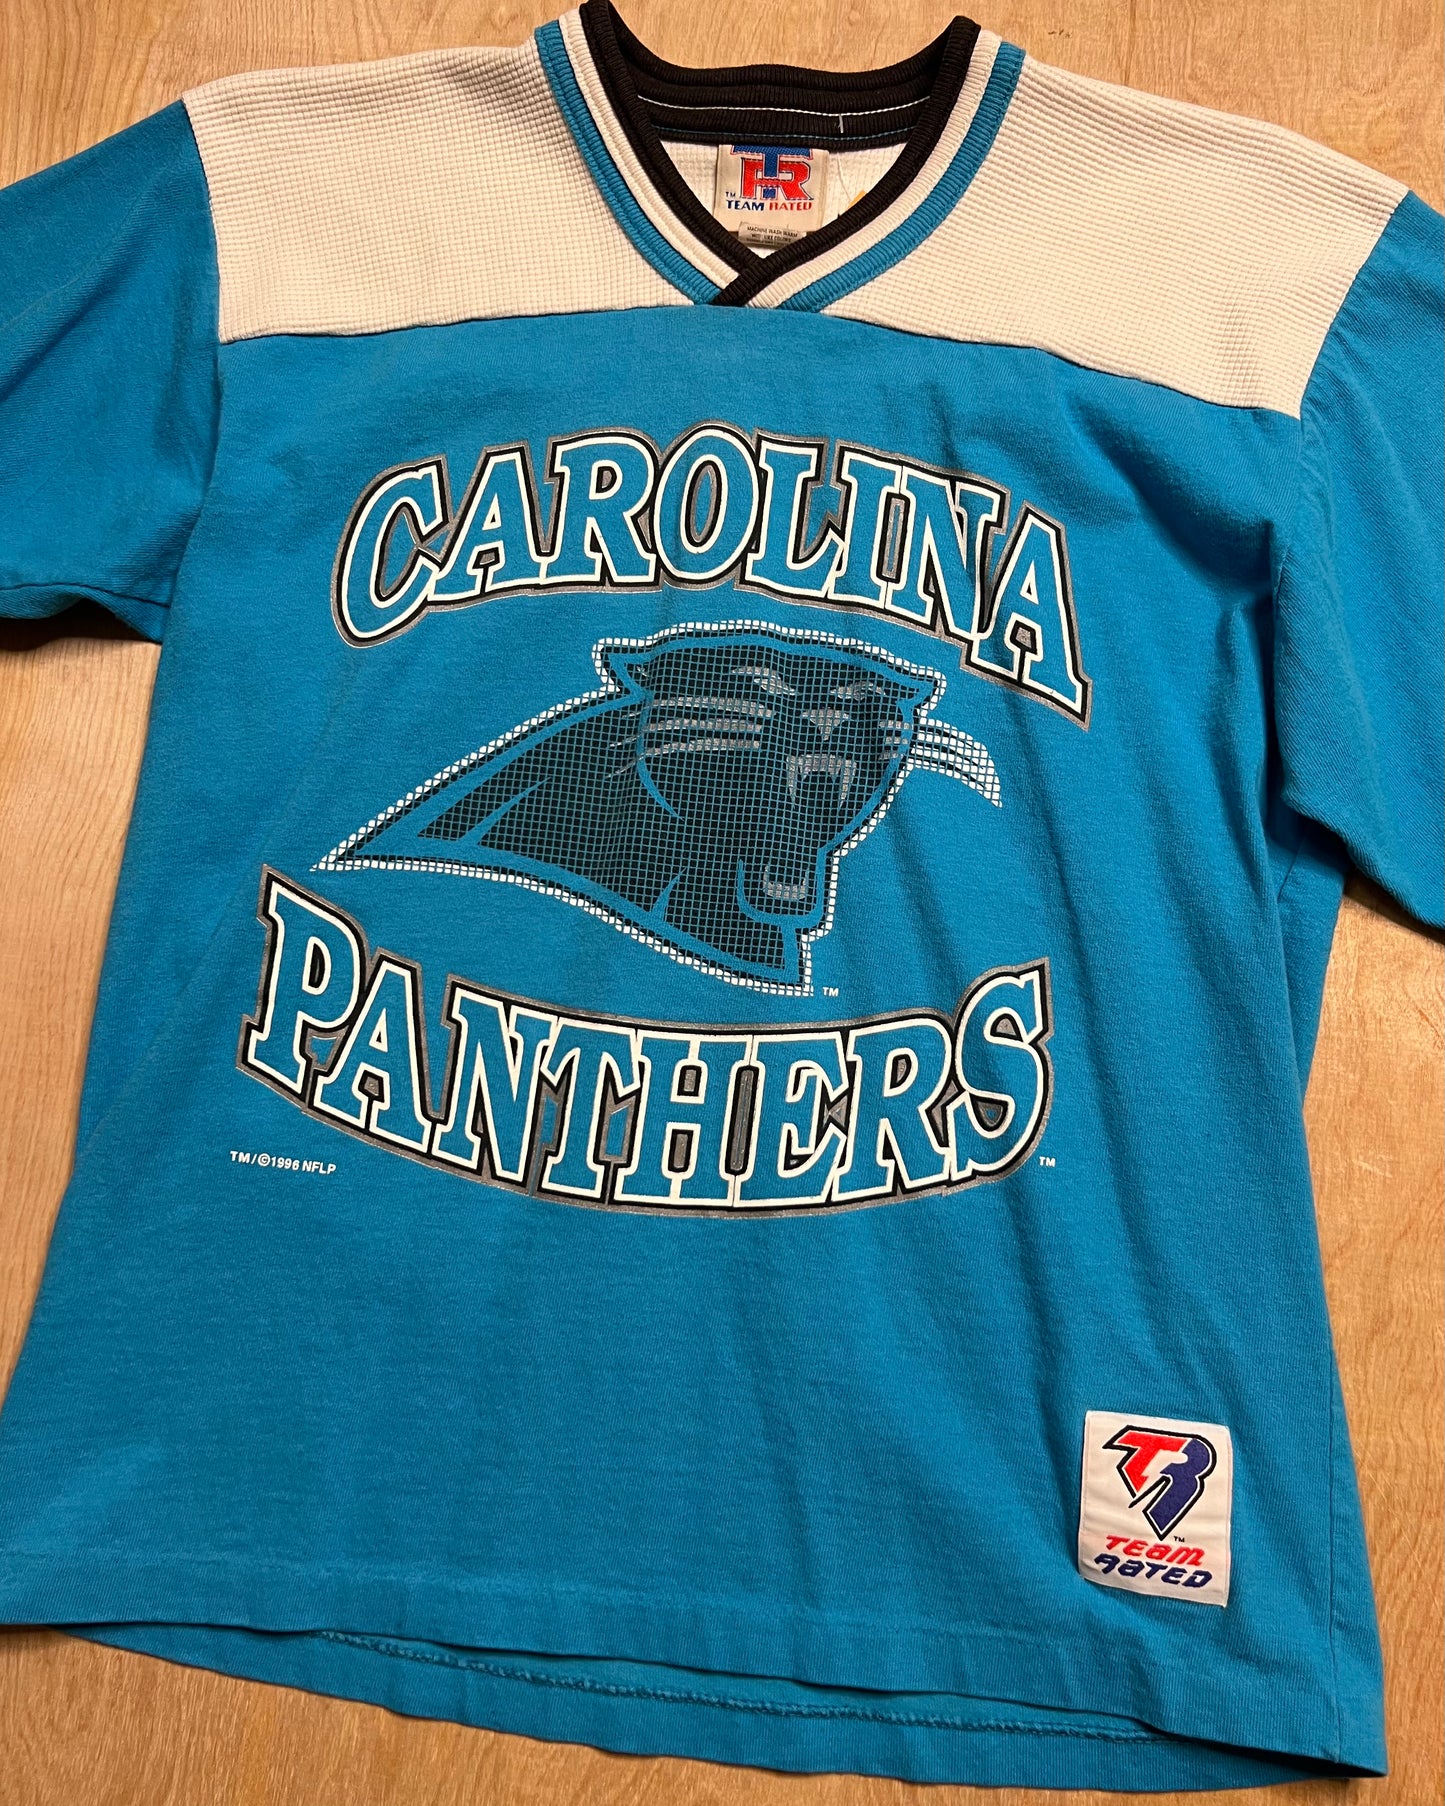 1996 Carolina Panthers Jersey Shirt